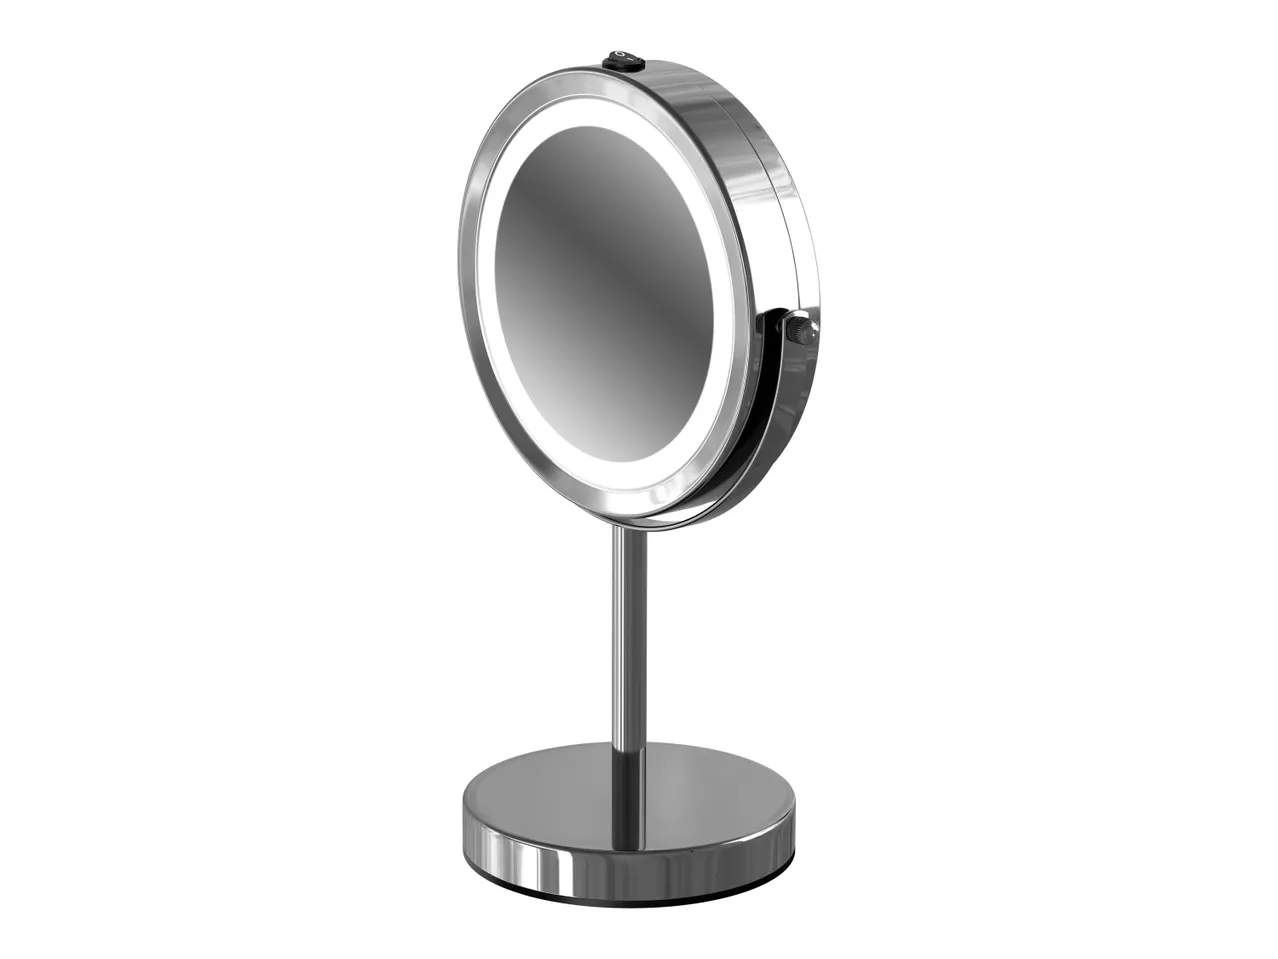 Specchio a LED per il trucco , prezzo 17.99 EUR 
Specchio a LED per il trucco 
- ...